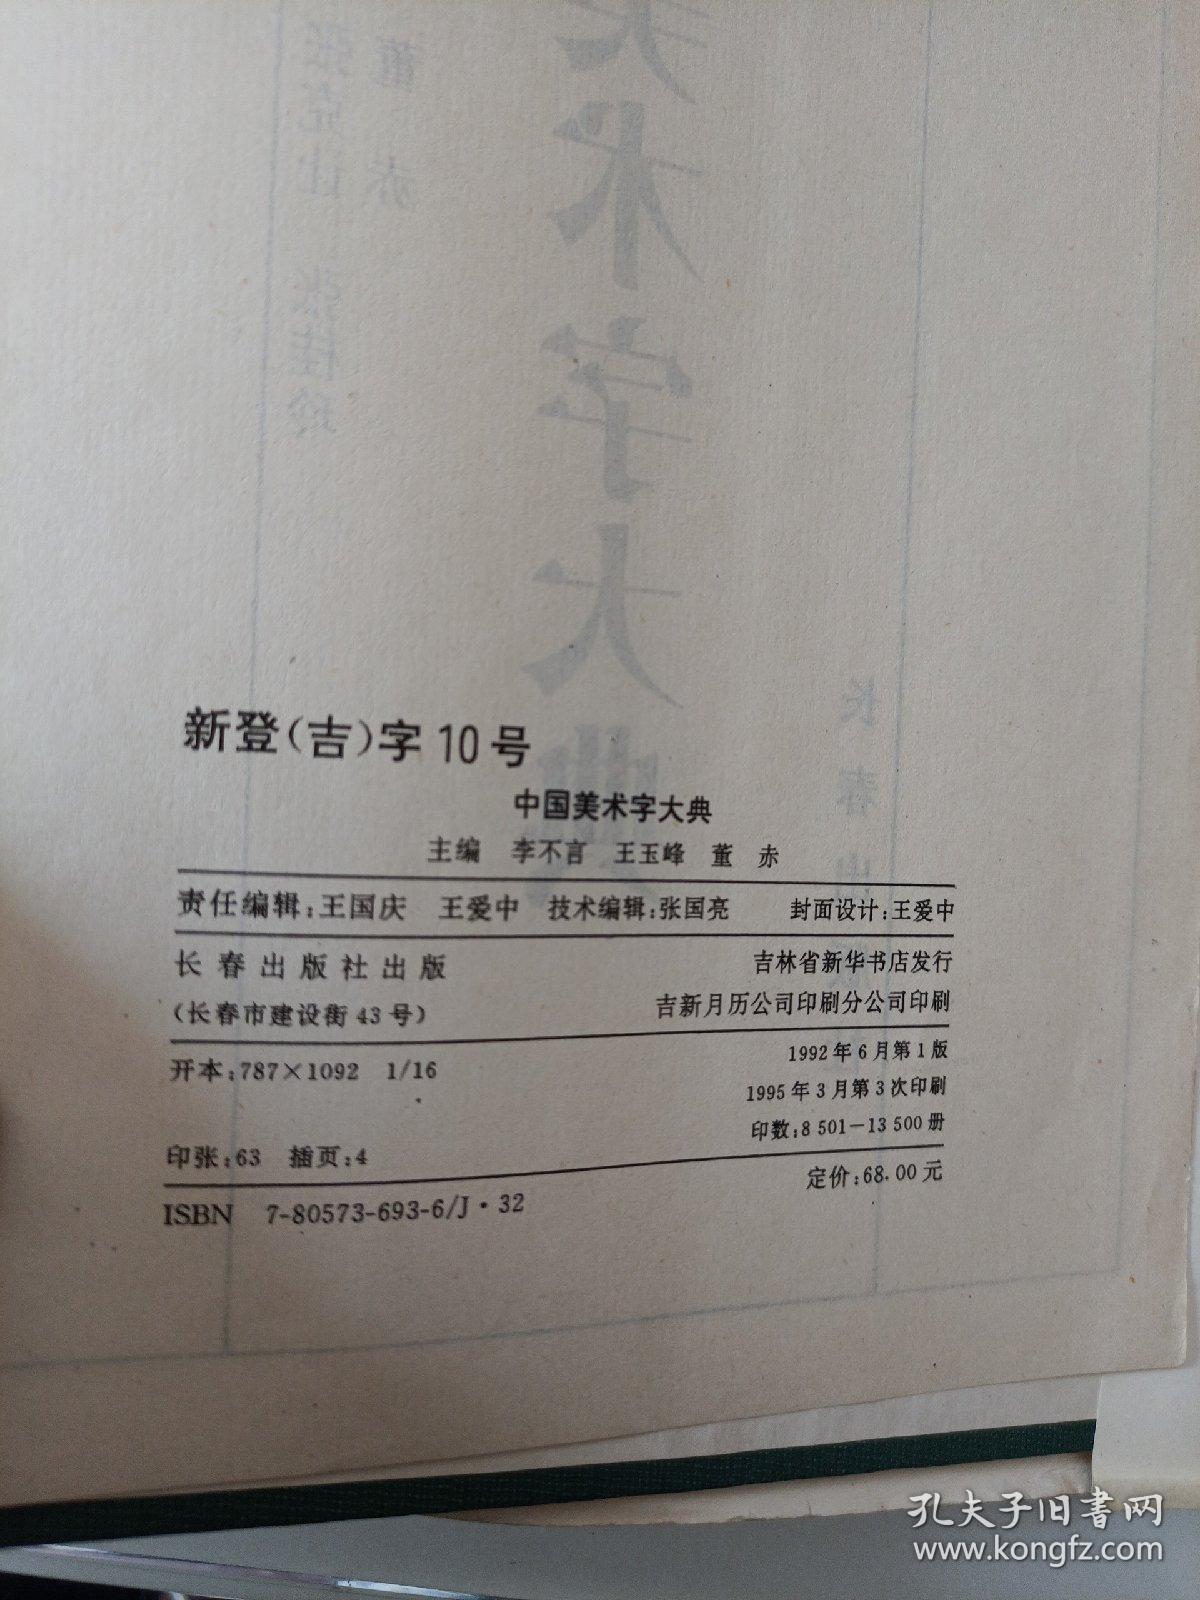 中国美术字大典